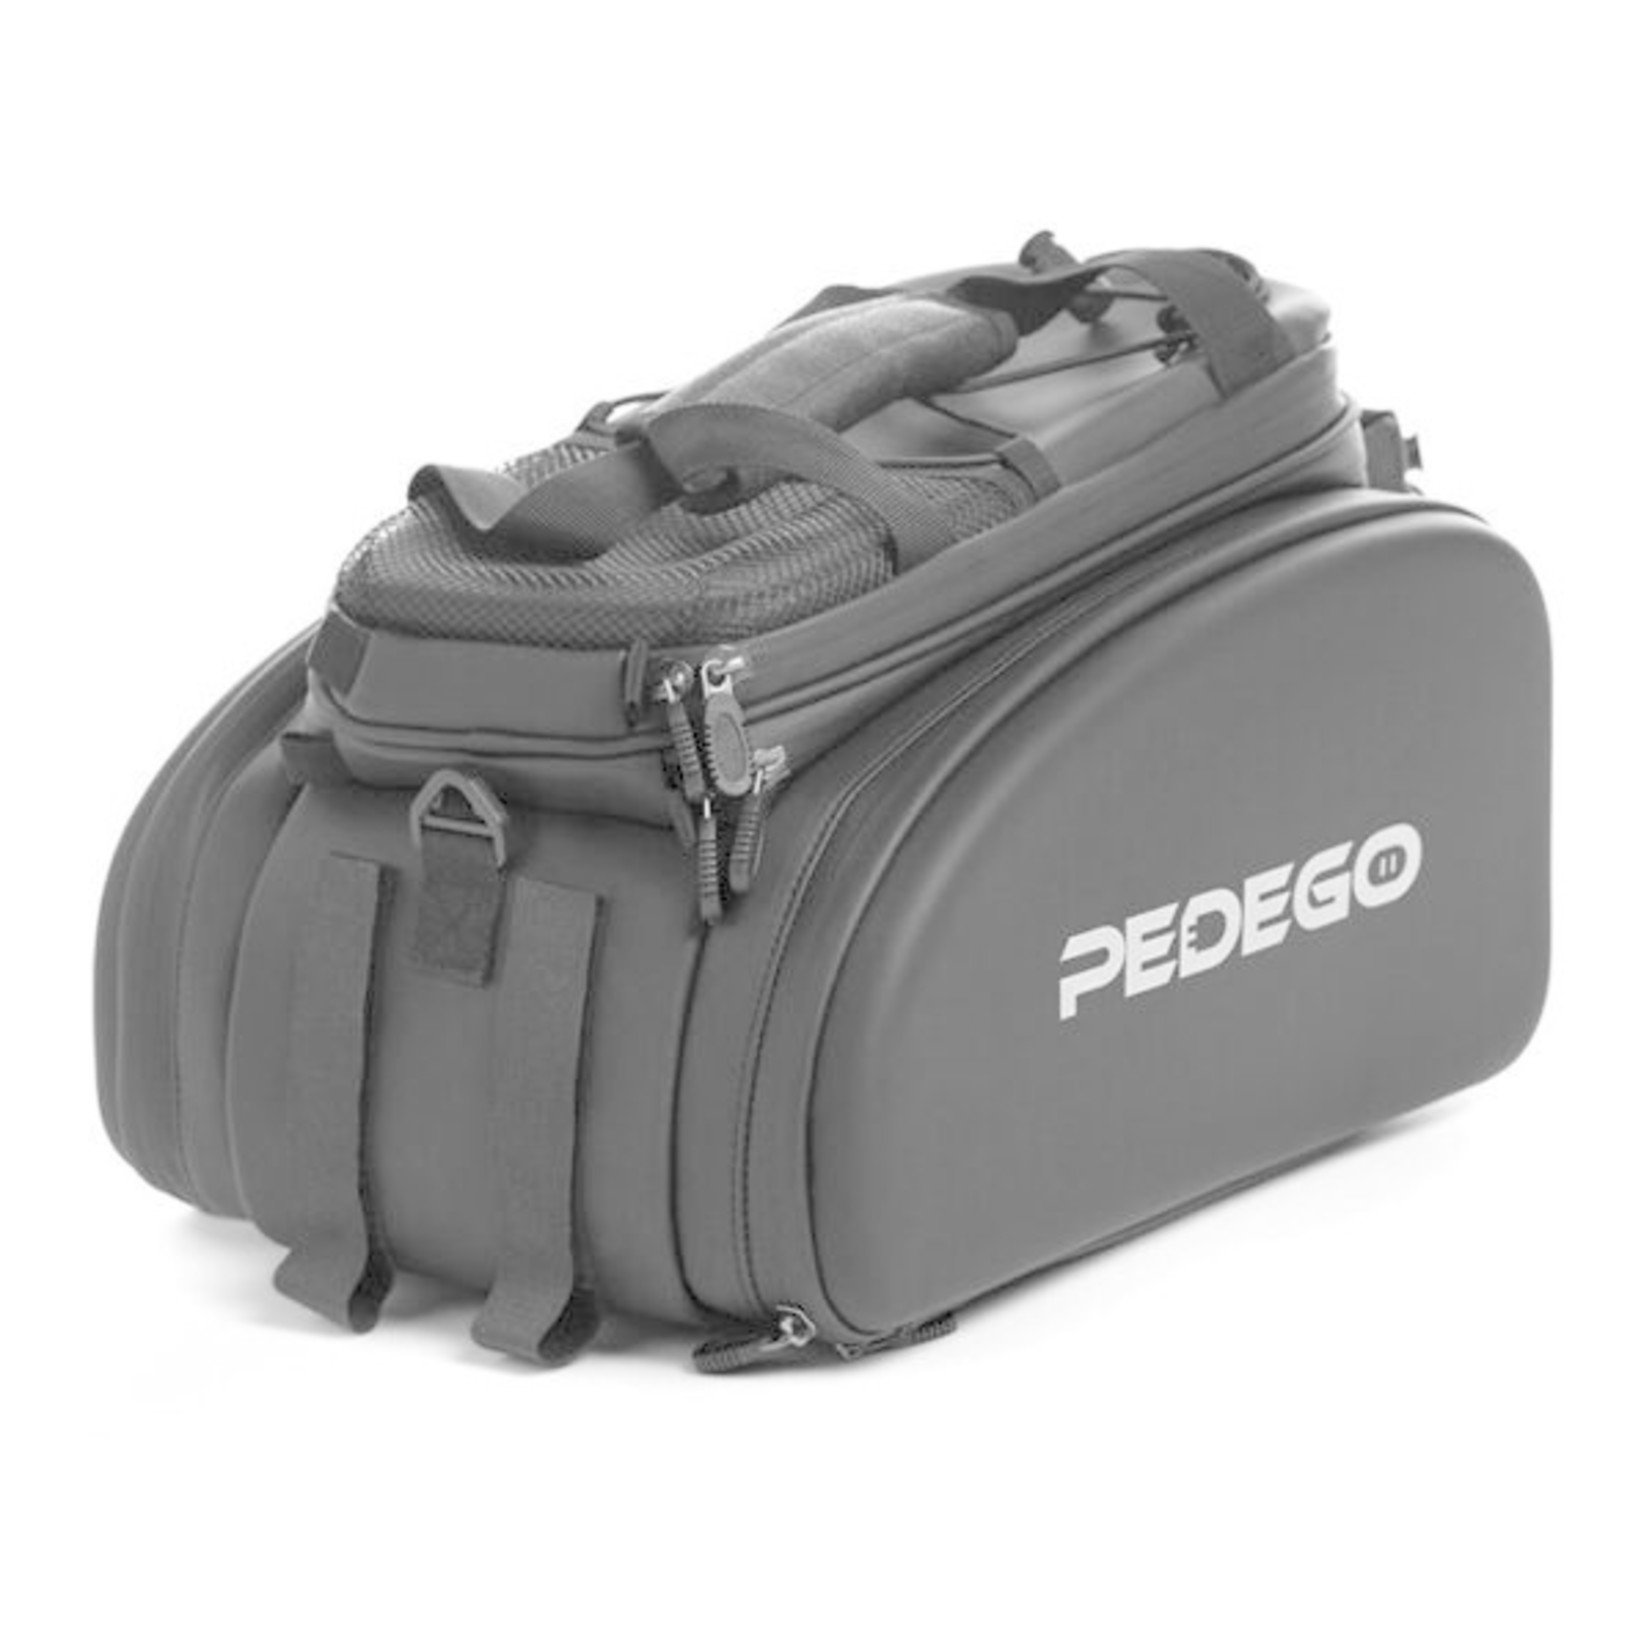 Pedego Pedego Convertible Trunk Bag